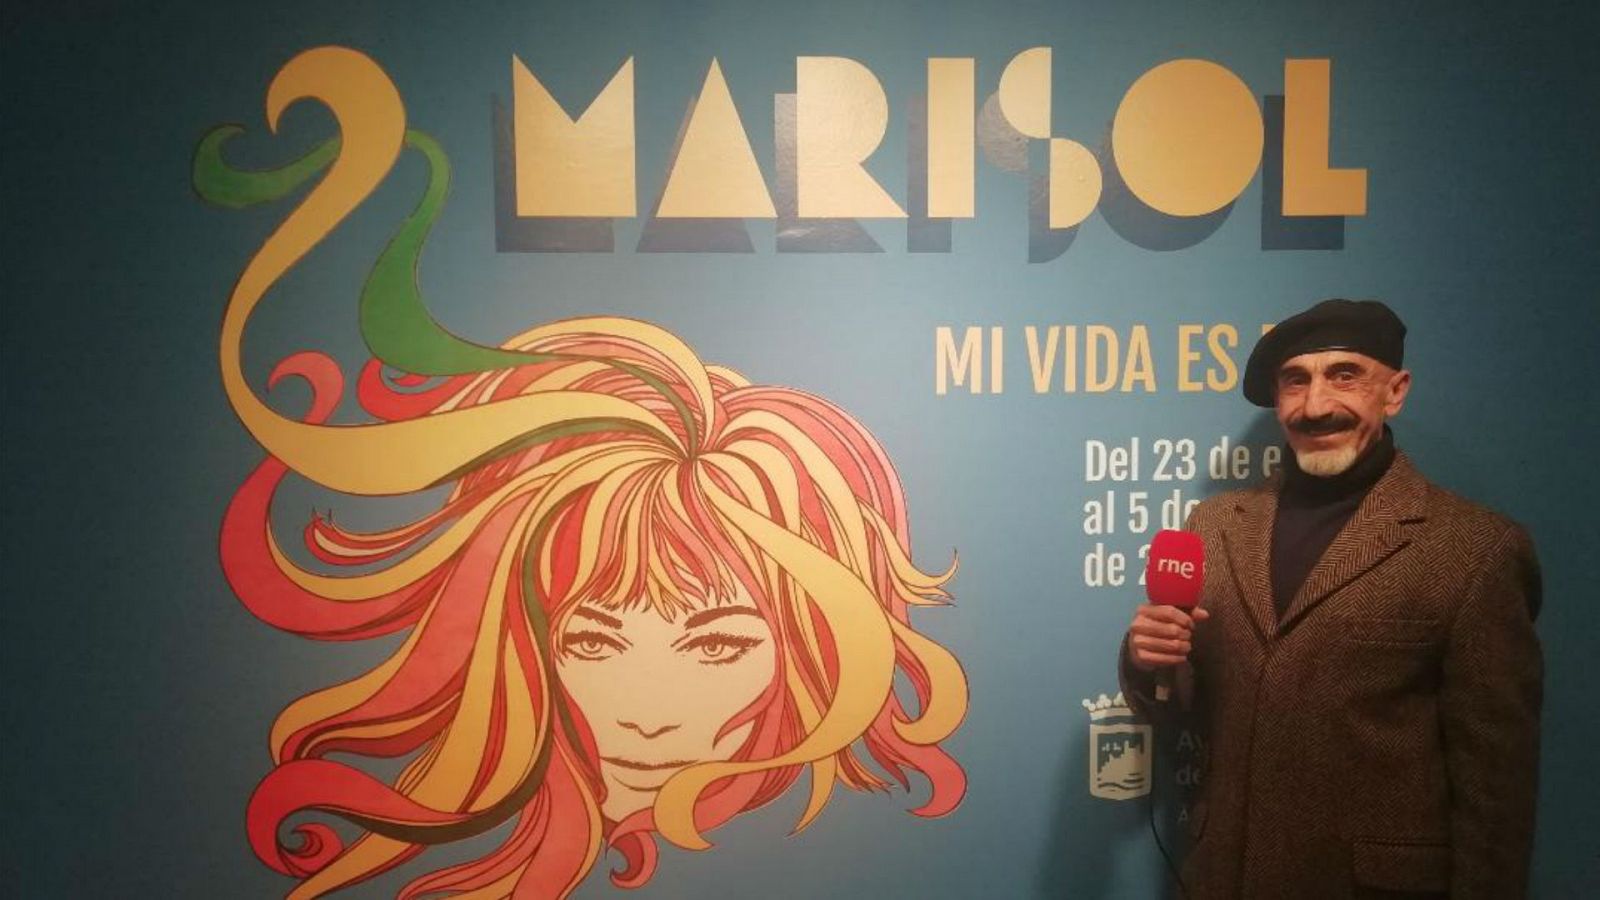 En escena - Marisol en la exposición "Mi vida es mía" - Escuchar ahora